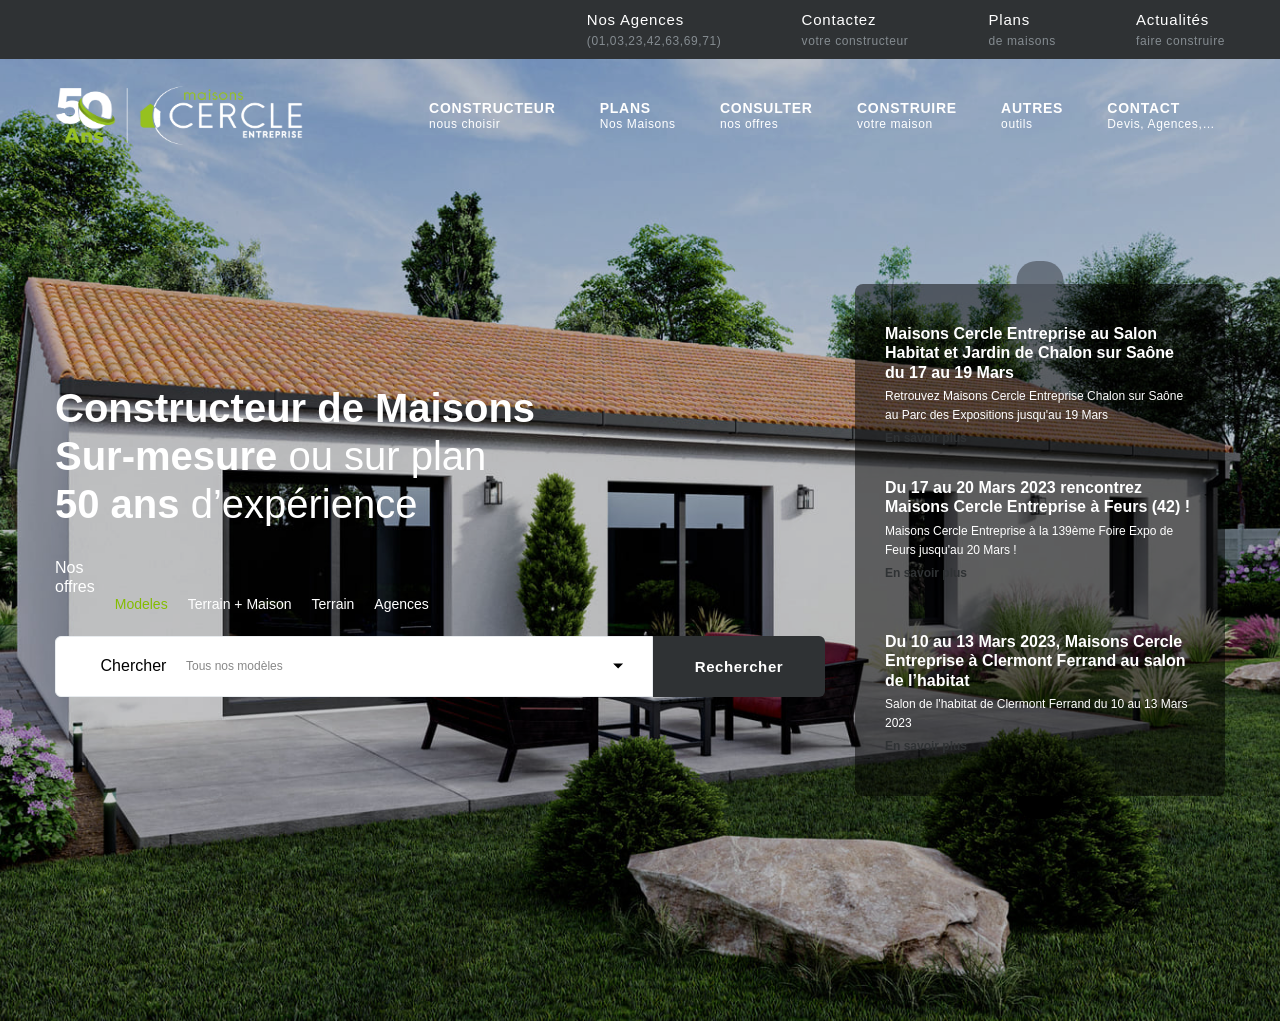 www.cercle-entreprise.fr